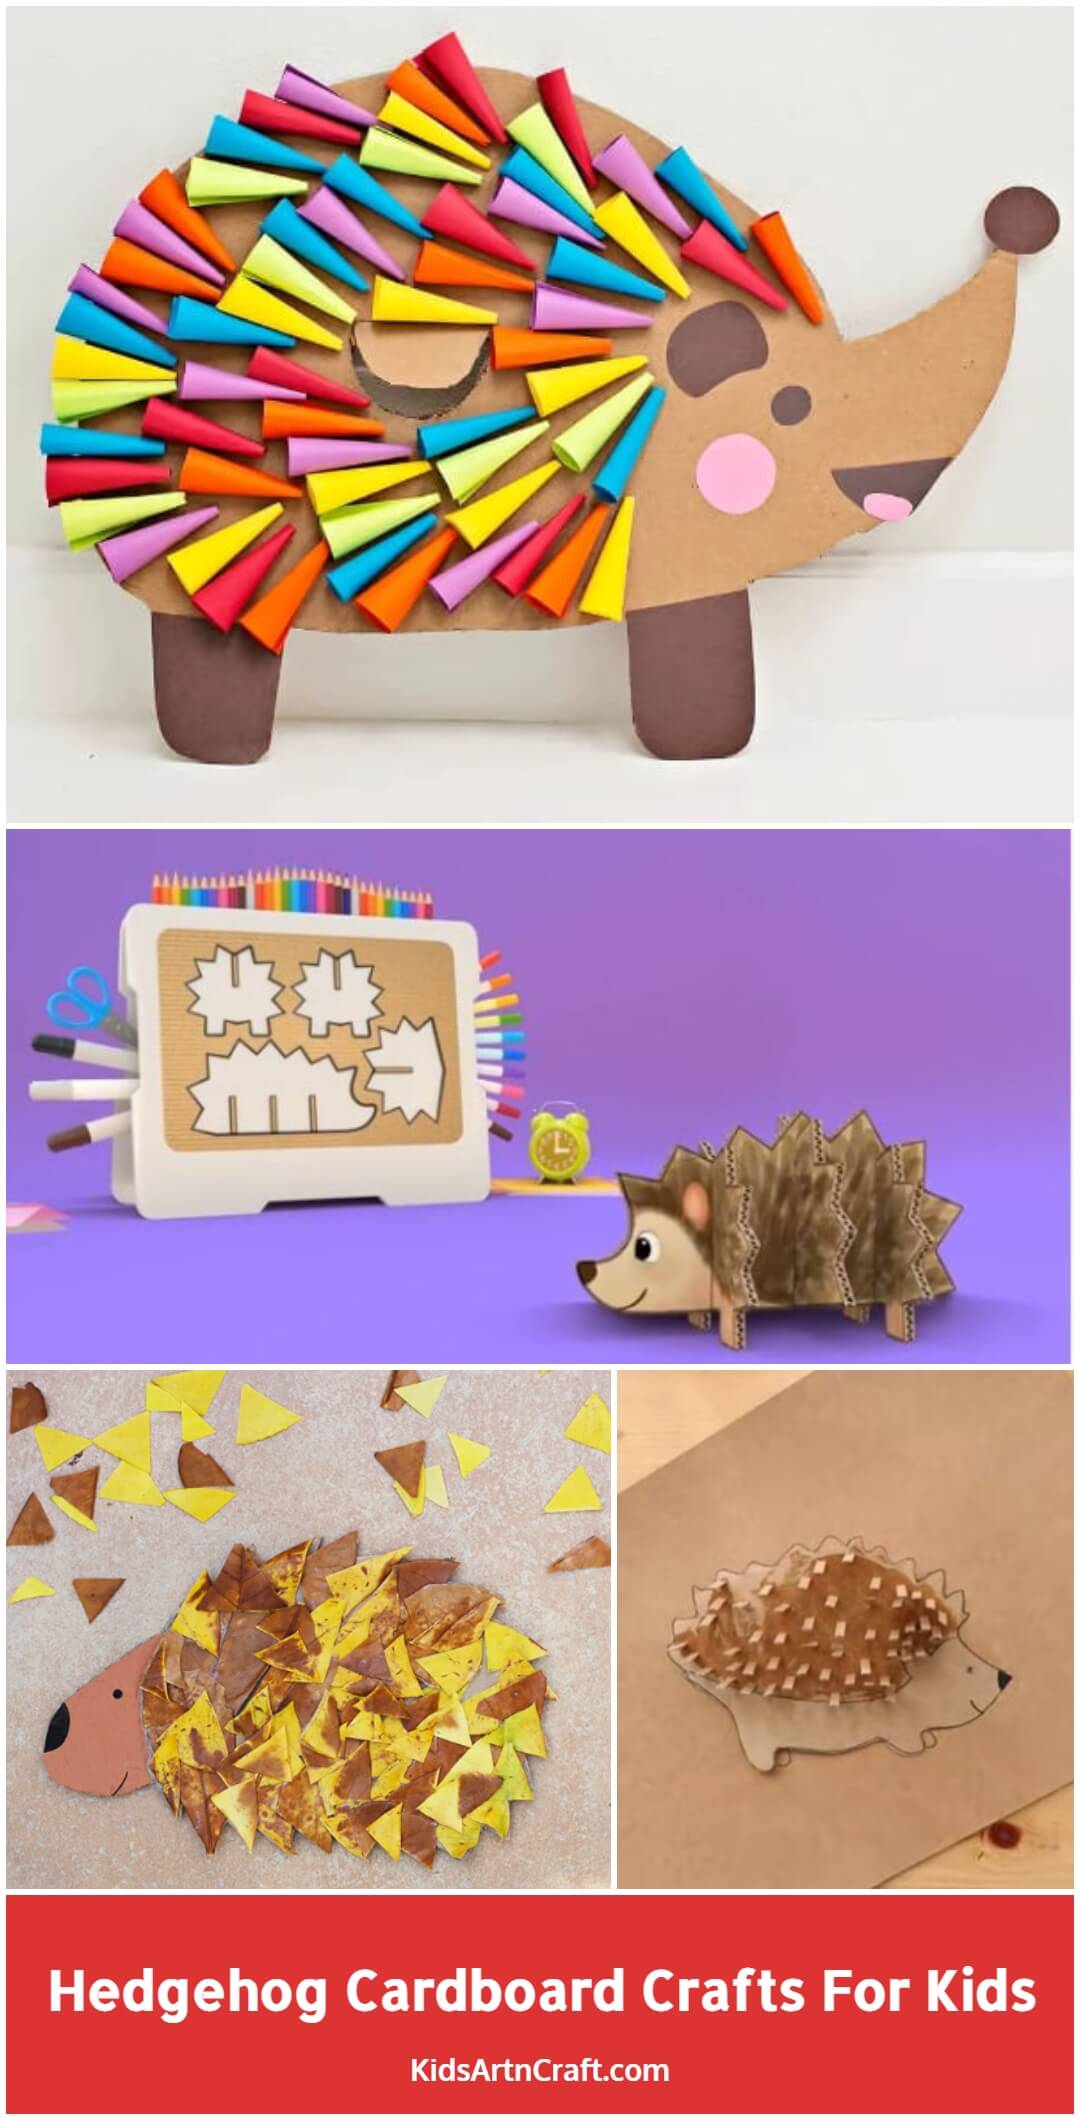 Hedgehog Cardboard Crafts for Kids